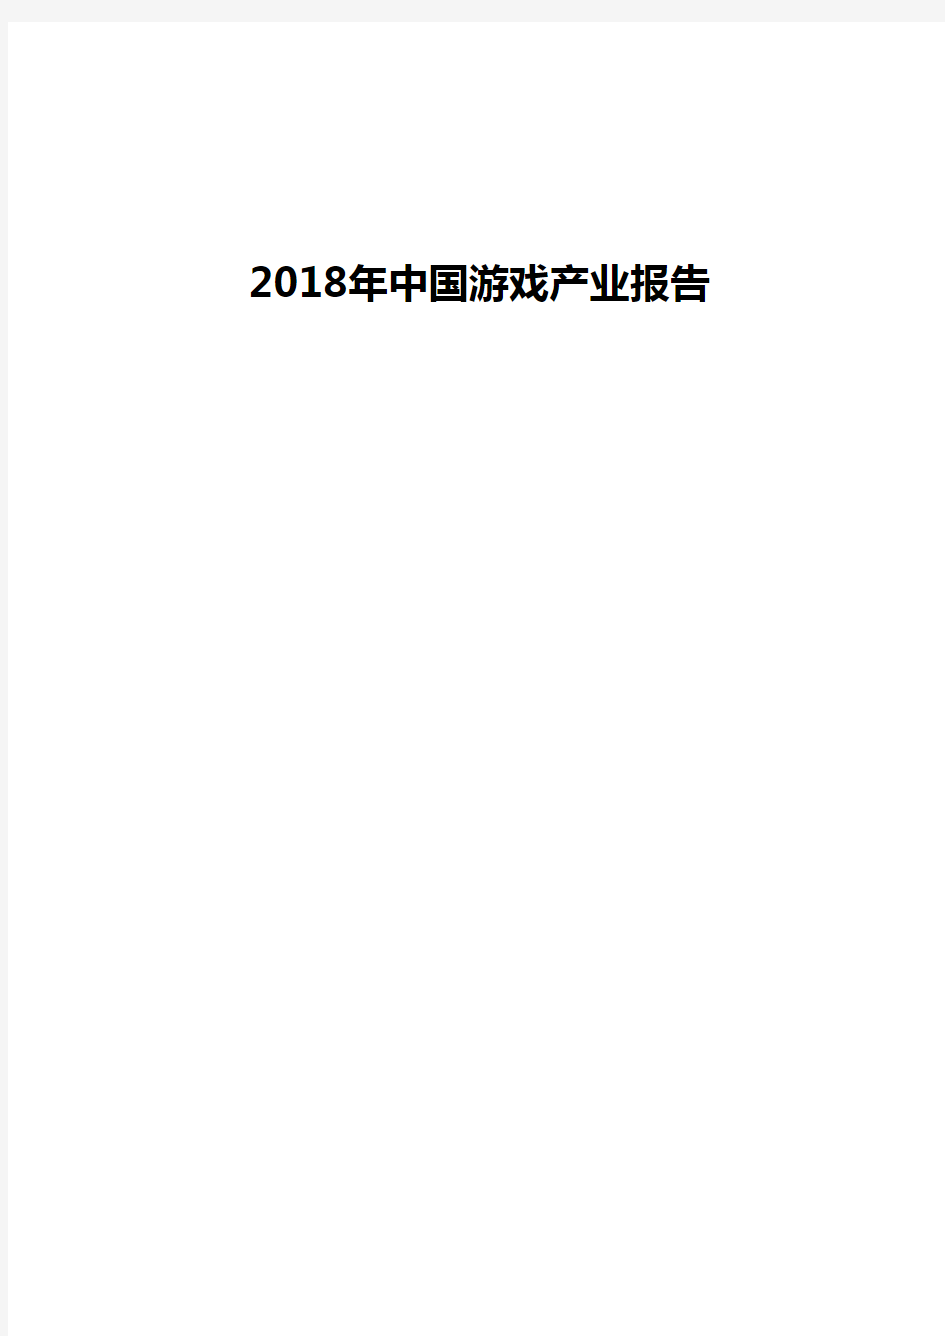 2018年中国游戏产业报告